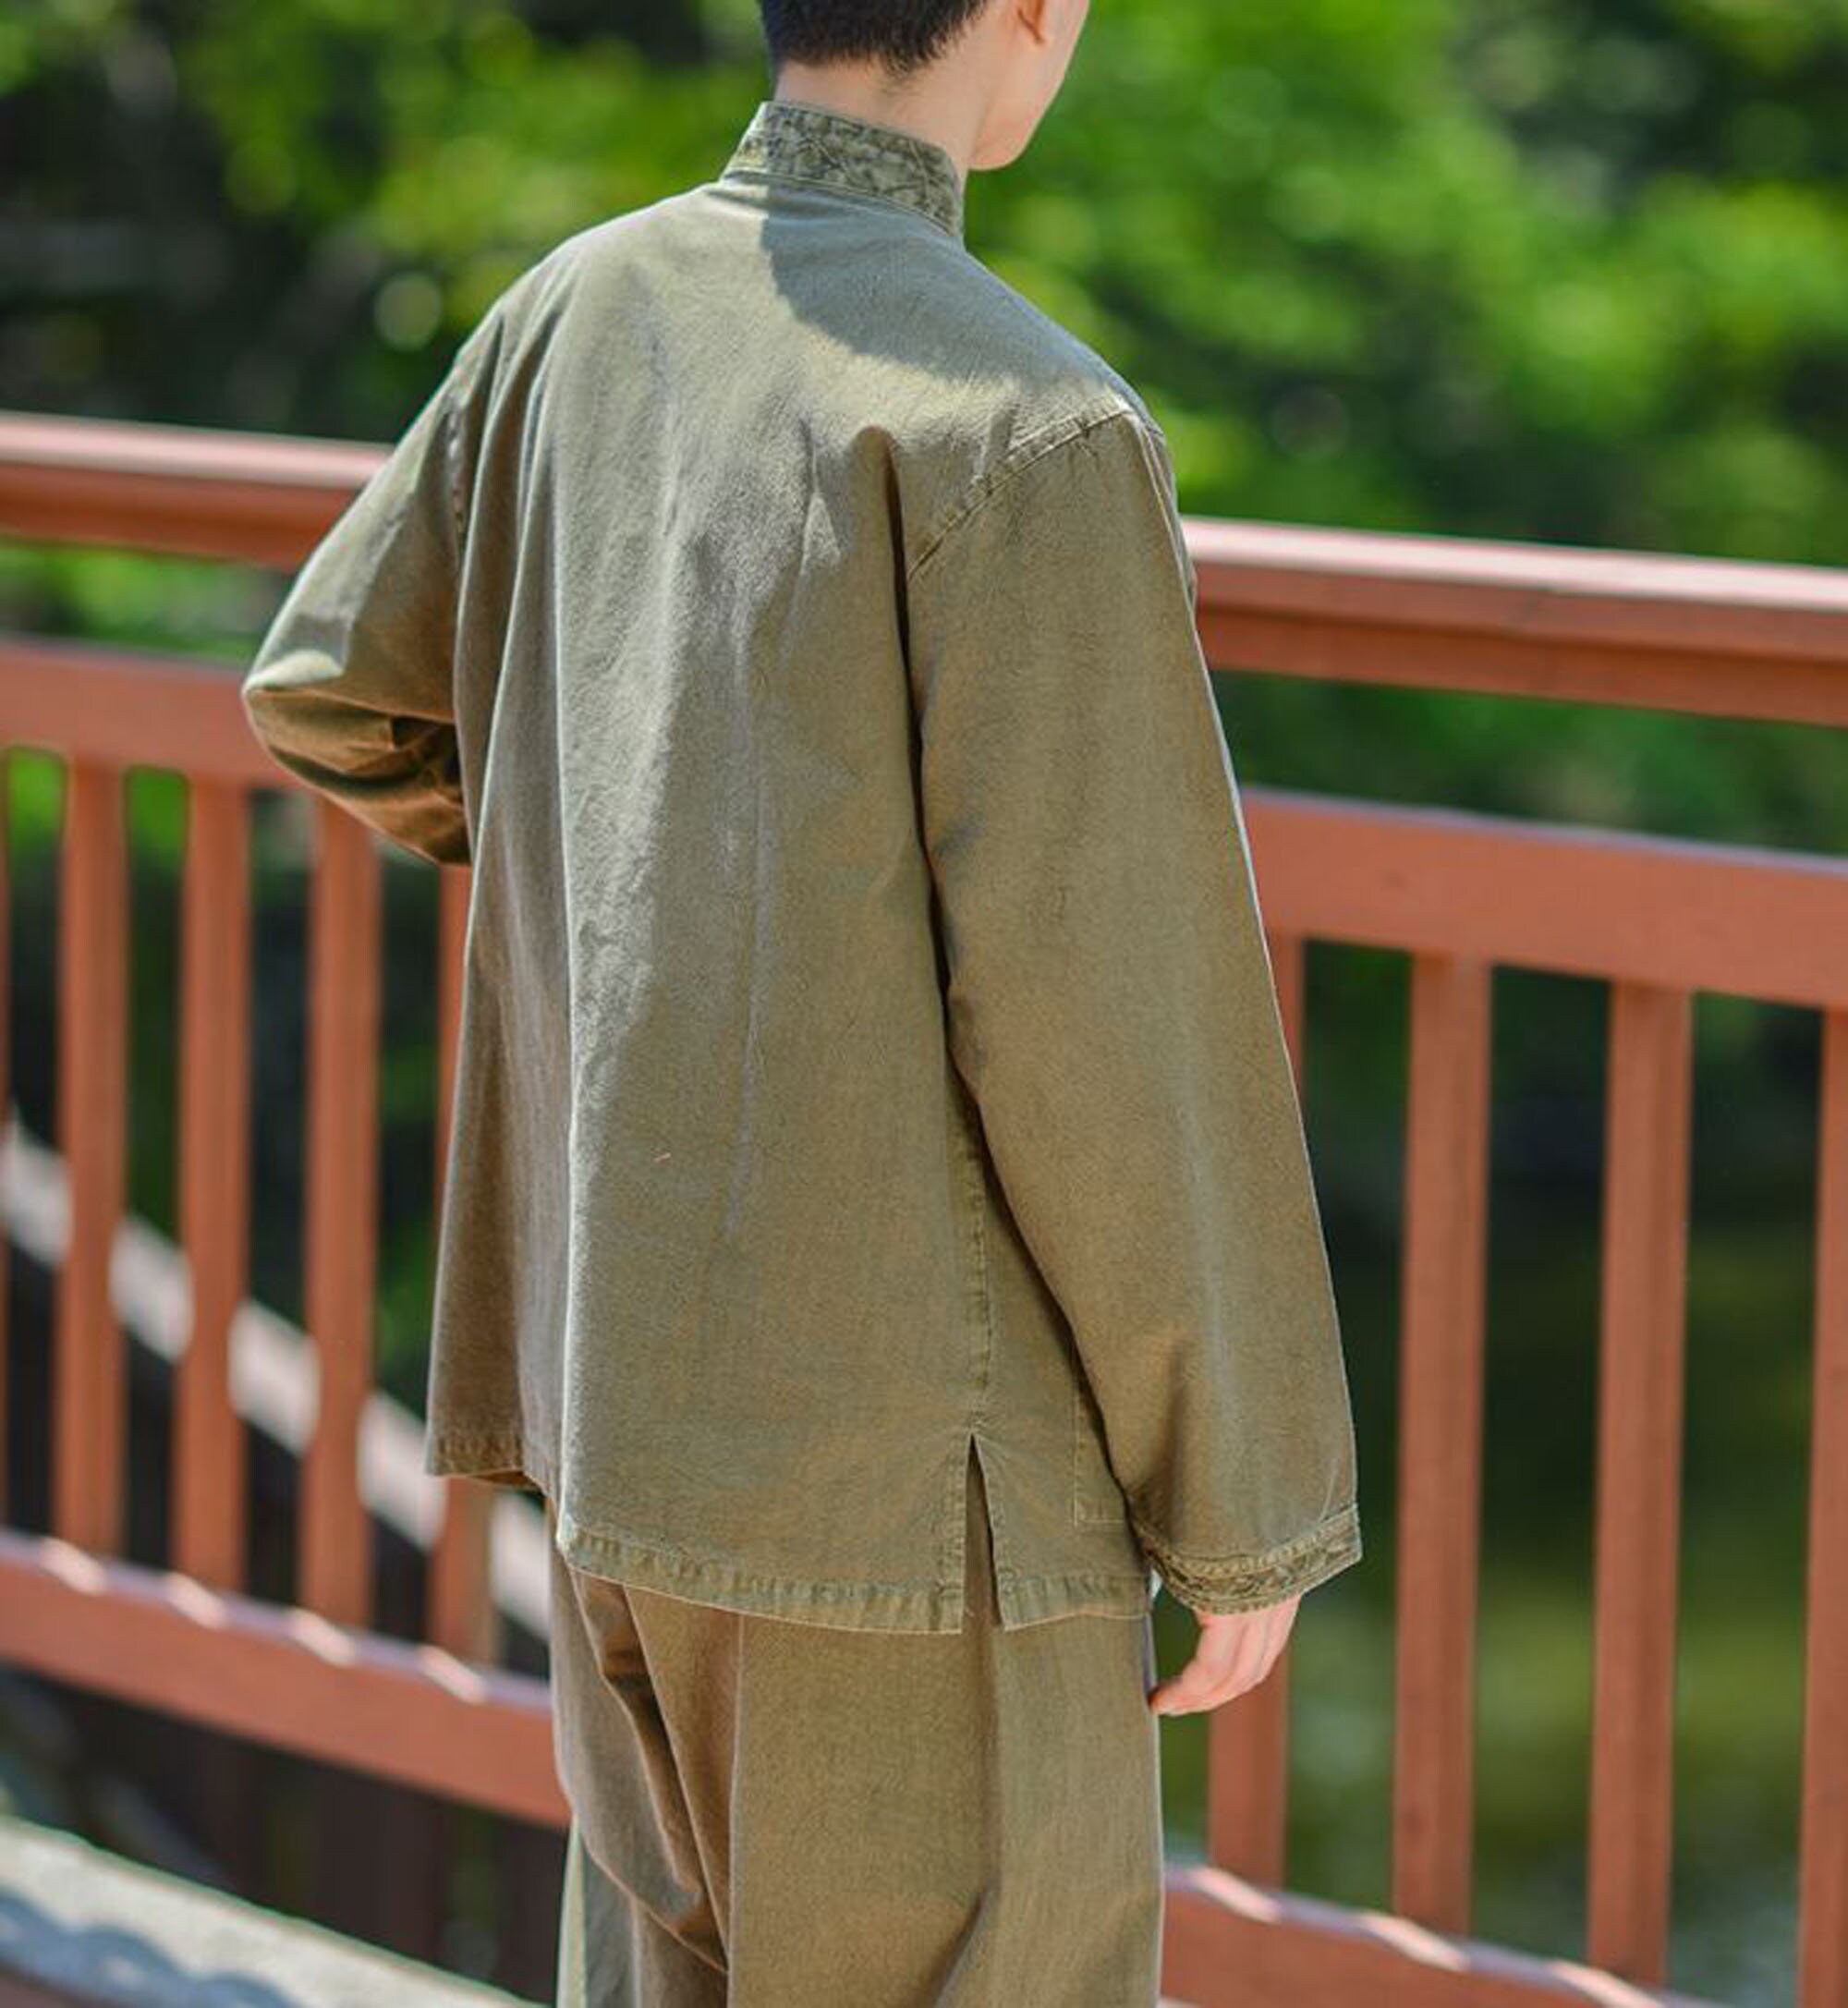 Modern Hanbok Man Daily Comfortable Clothes Hanbok Korea - Etsy